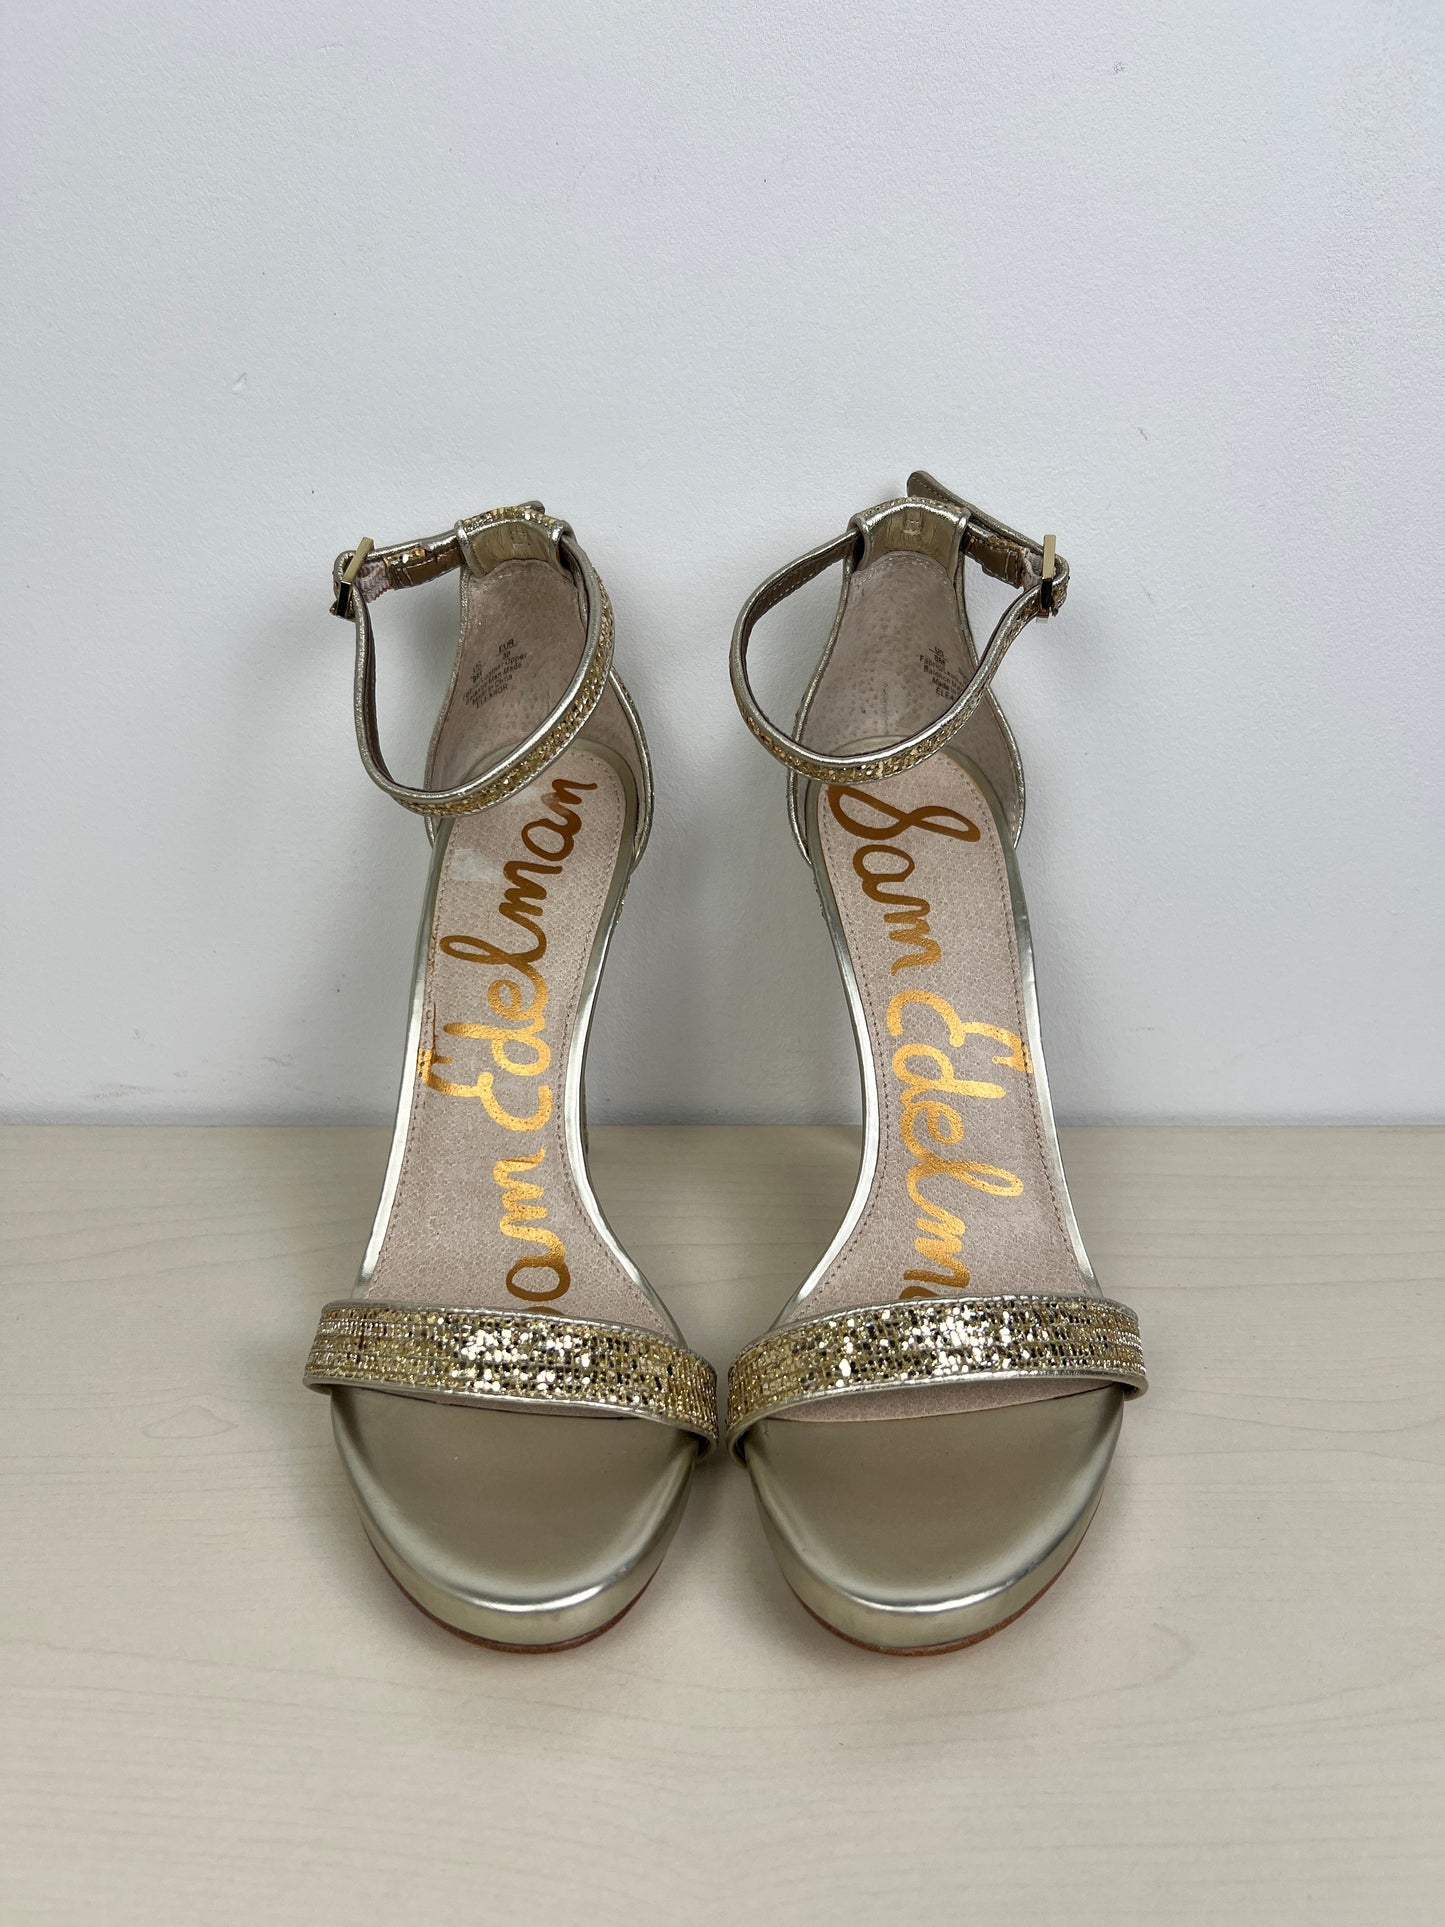 Sandals Heels Stiletto By Sam Edelman  Size: 8